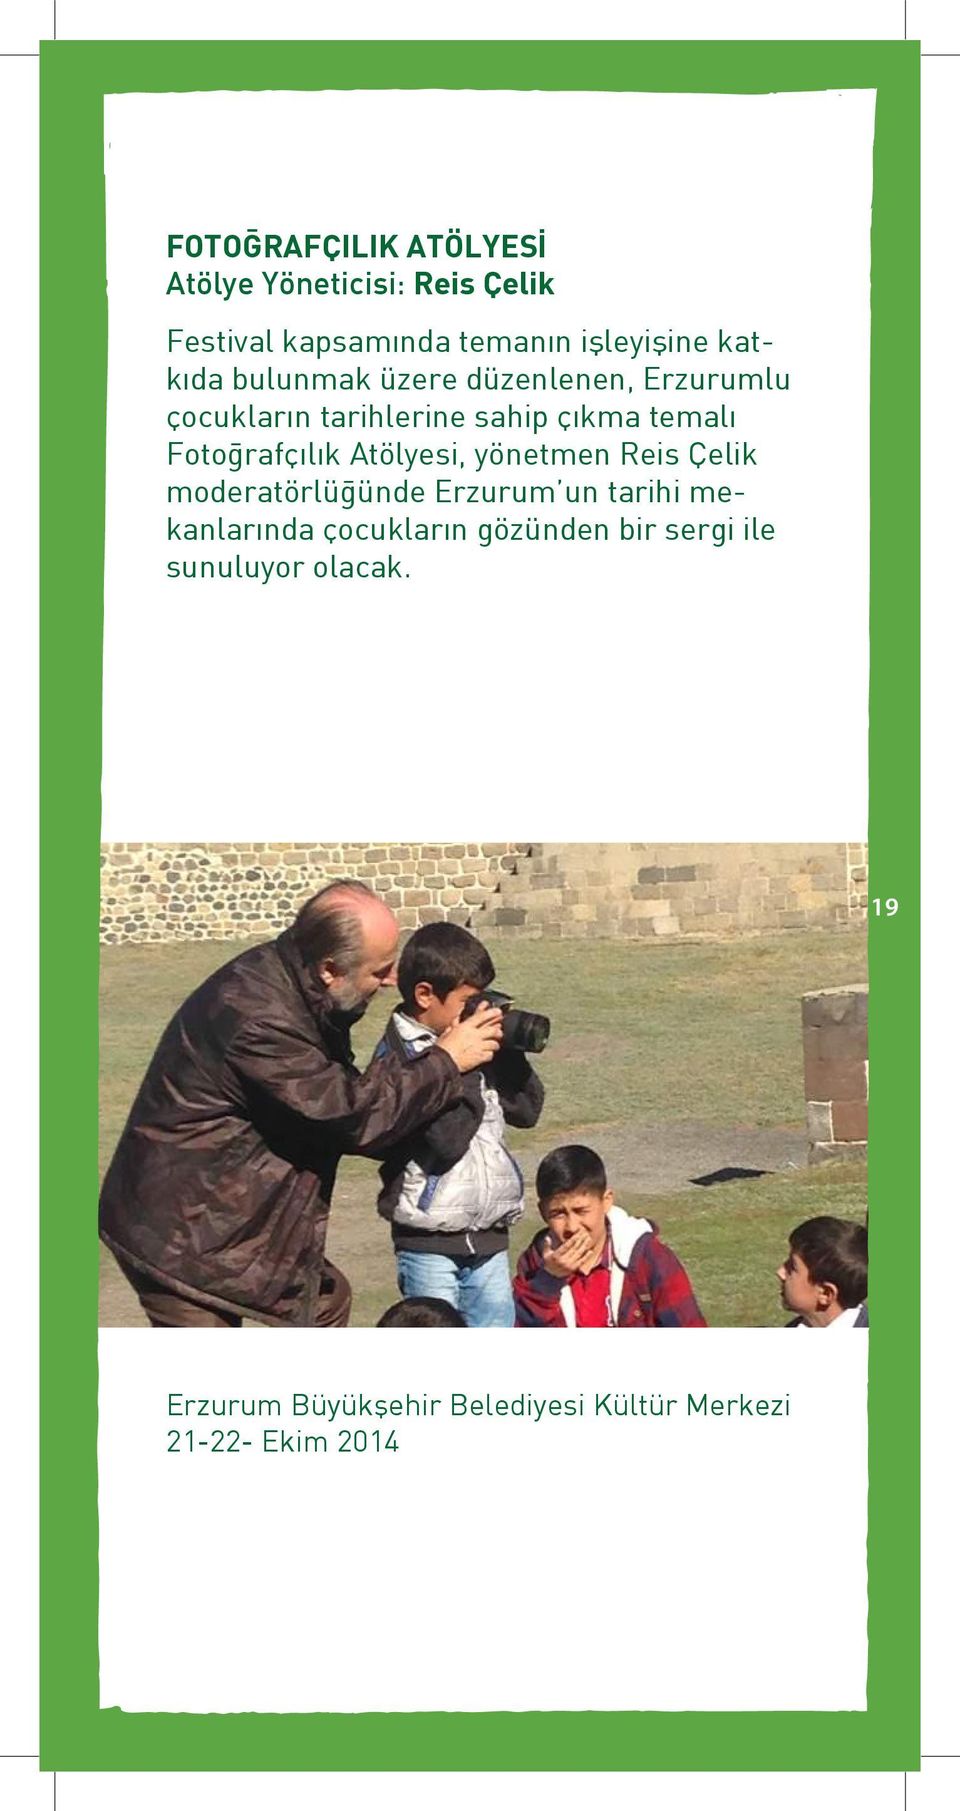 Fotoğrafçılık Atölyesi, yönetmen Reis Çelik moderatörlüğünde Erzurum un tarihi mekanlarında